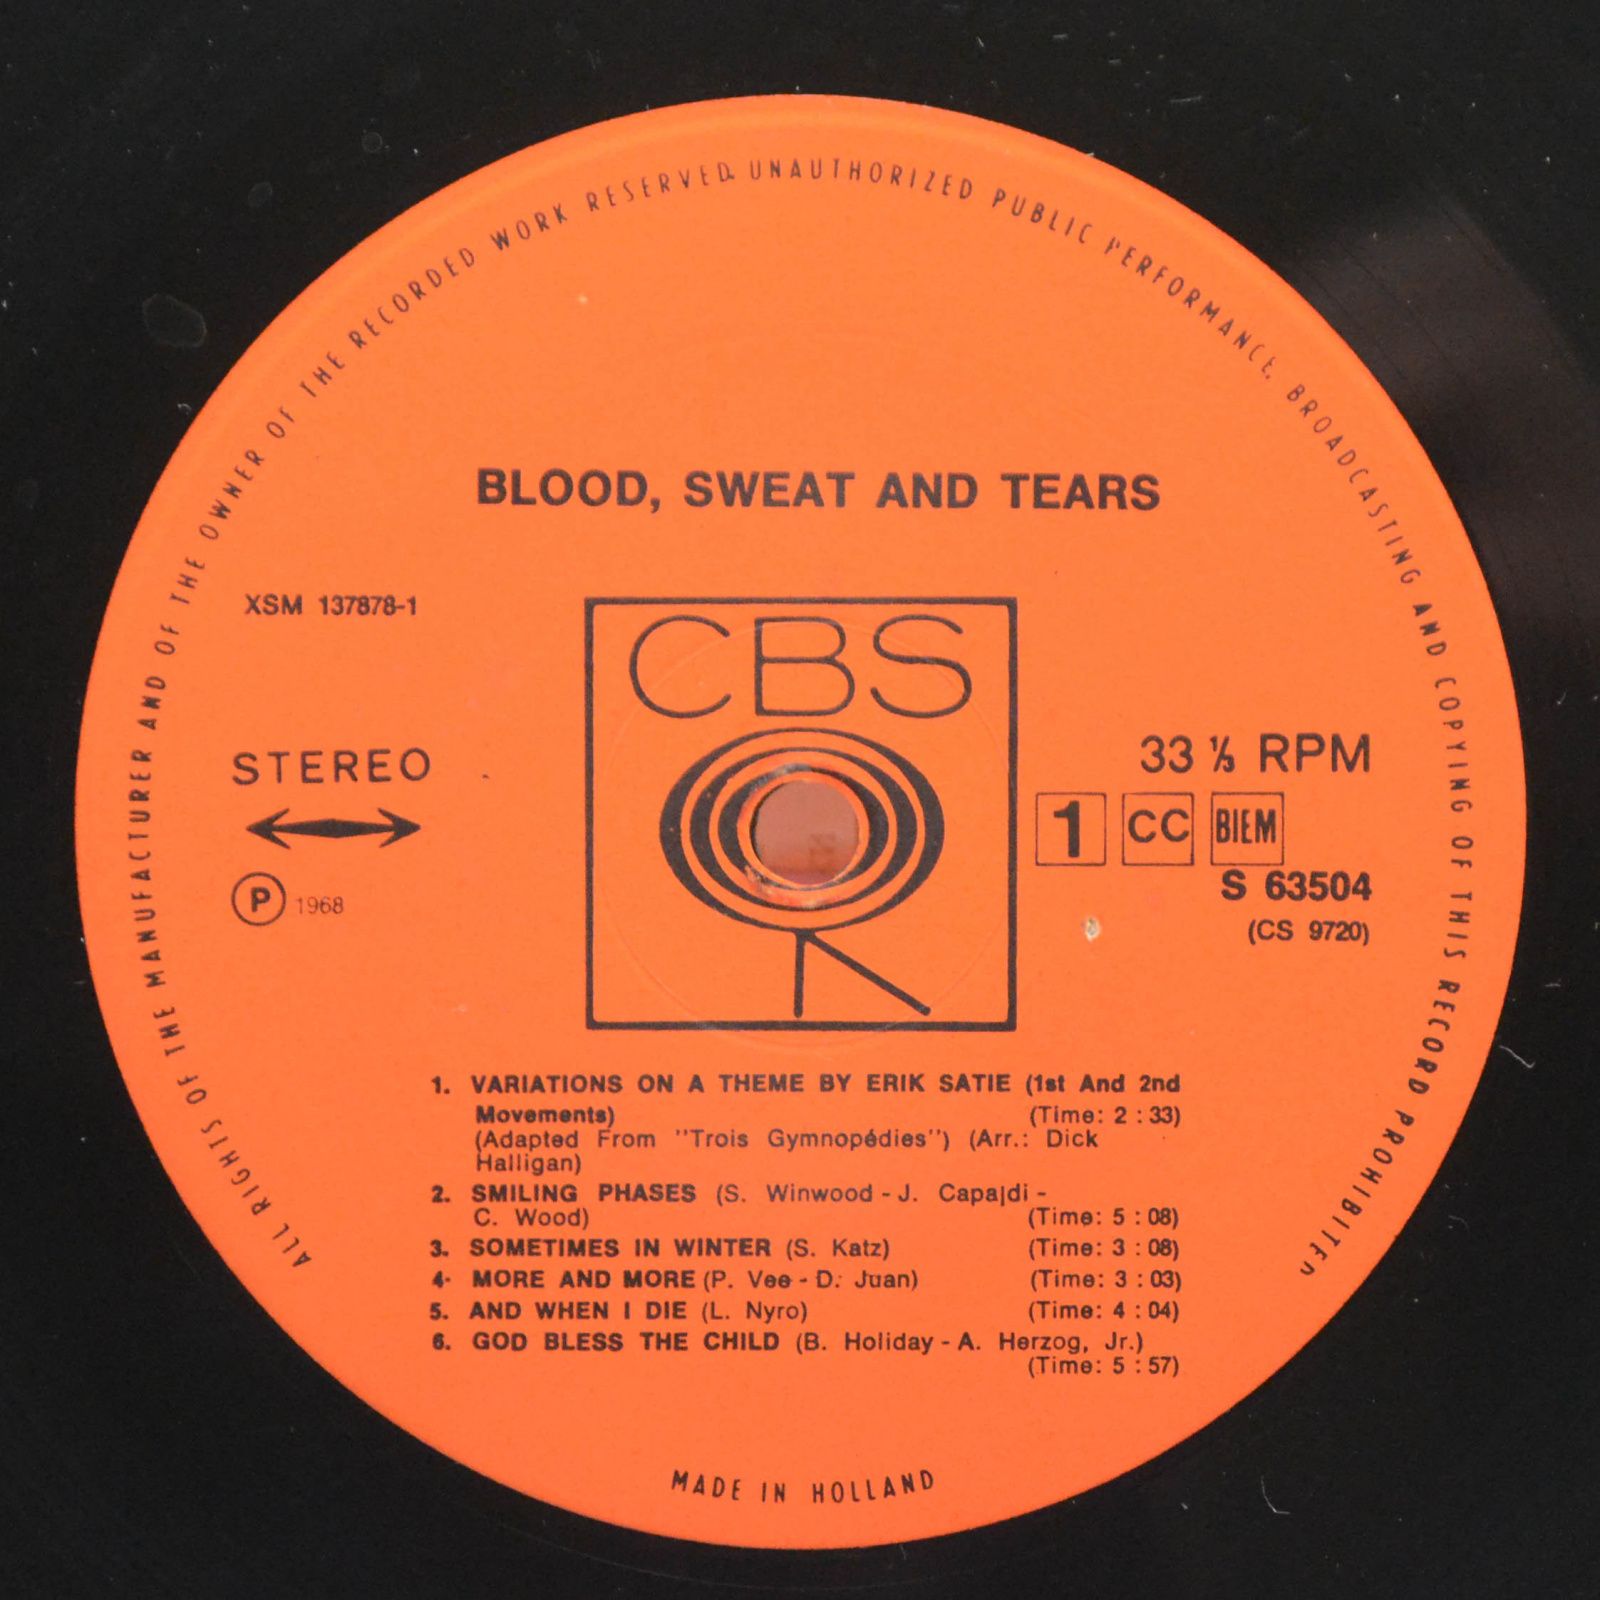 Blood, Sweat And Tears — Blood, Sweat And Tears, 1969